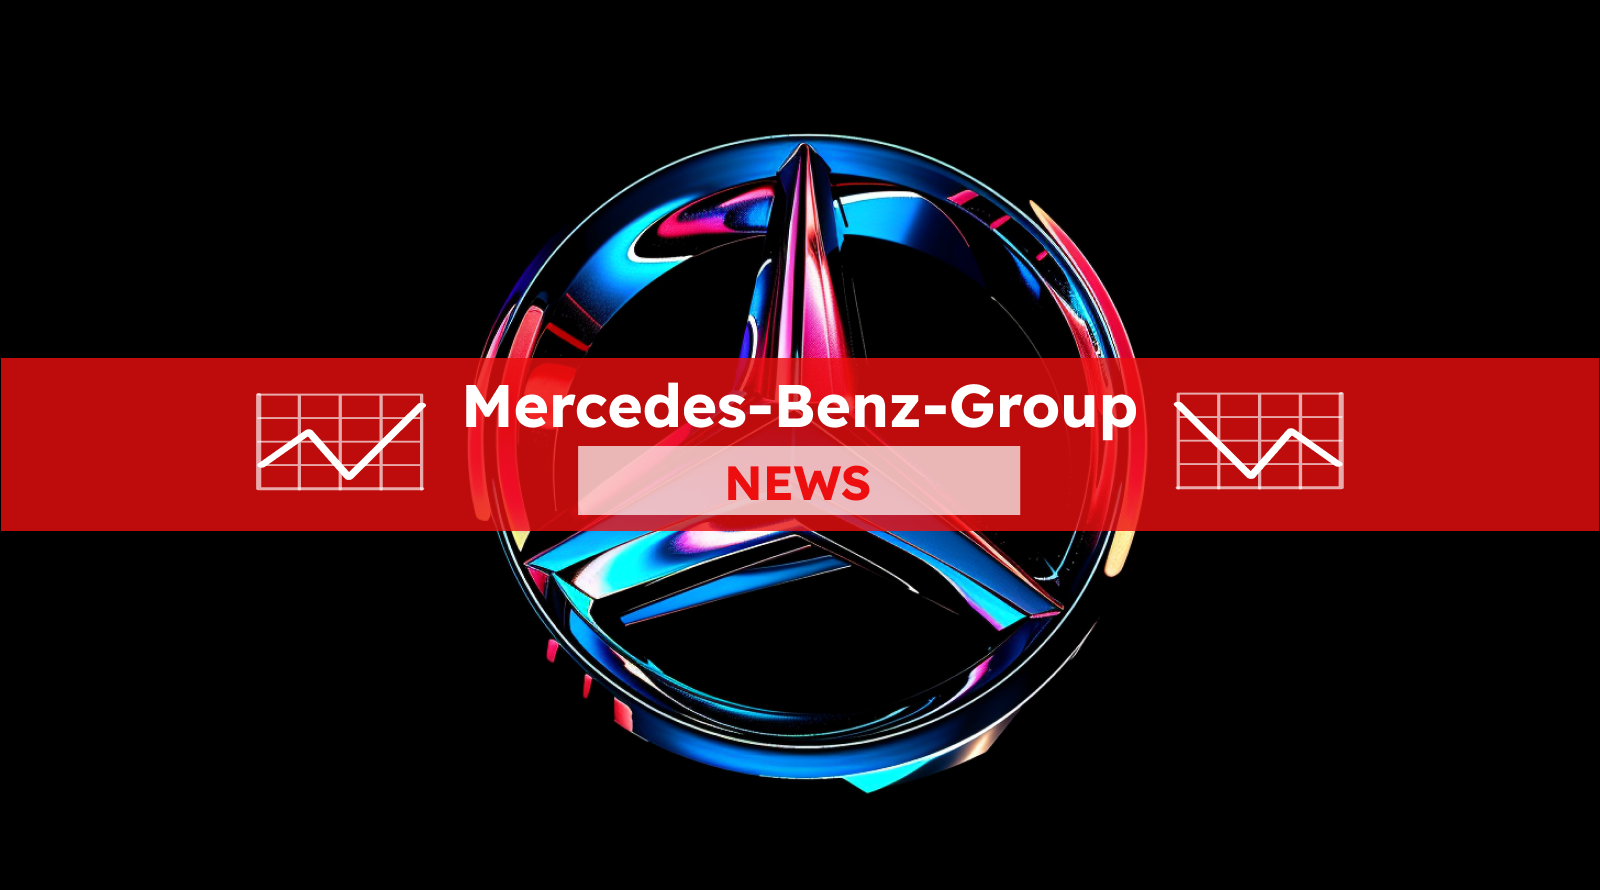 Veröffentliche ein Bild für einen Artikel über die Mercedes-Benz Group-Aktie